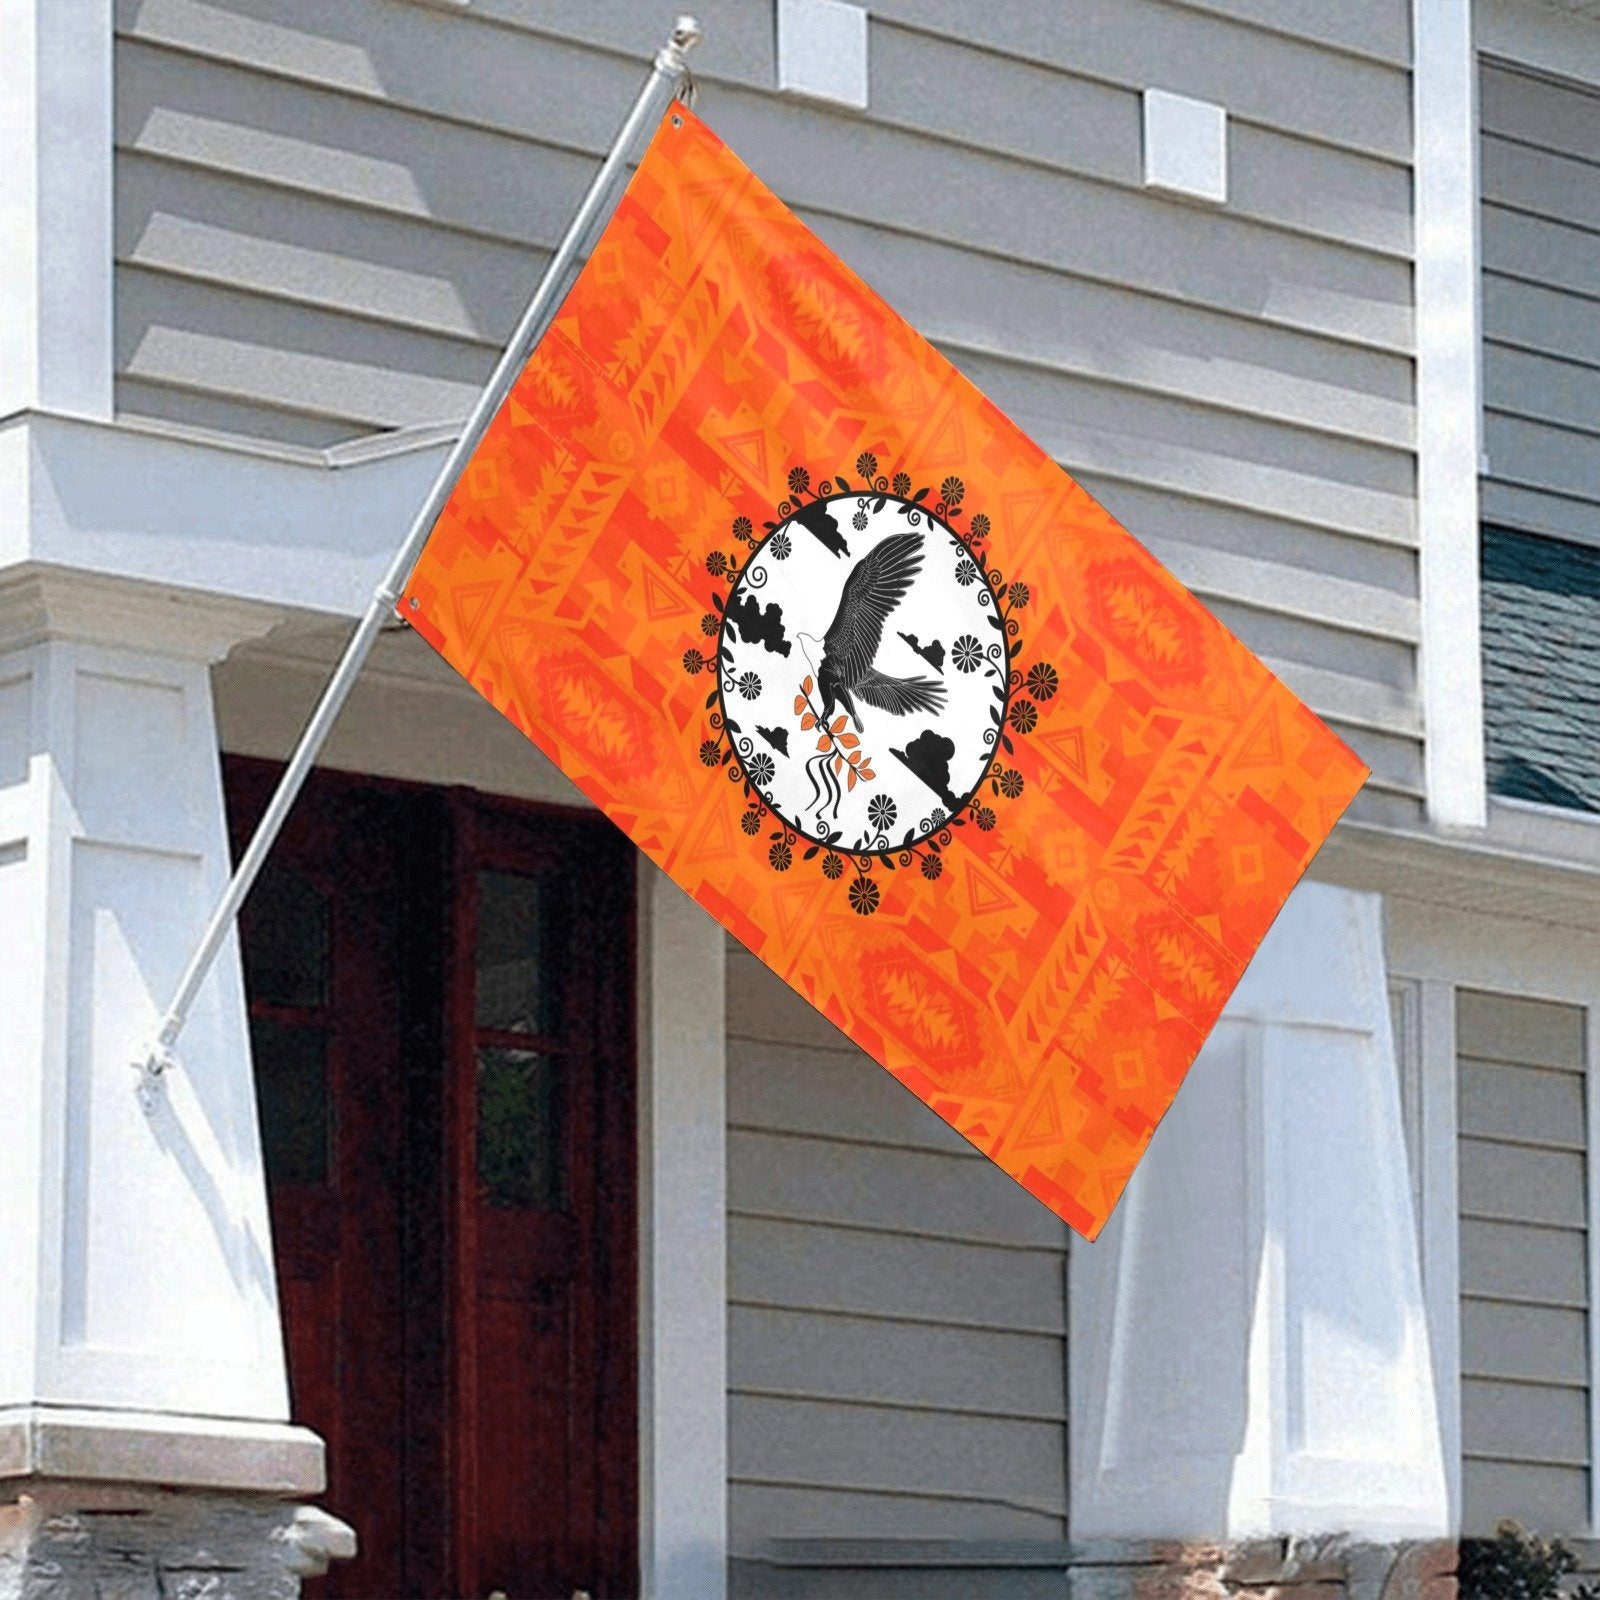 Chiefs Mountain Orange Carrying Their Prayers Garden Flag 59"x35" Garden Flag 59"x35" e-joyer 